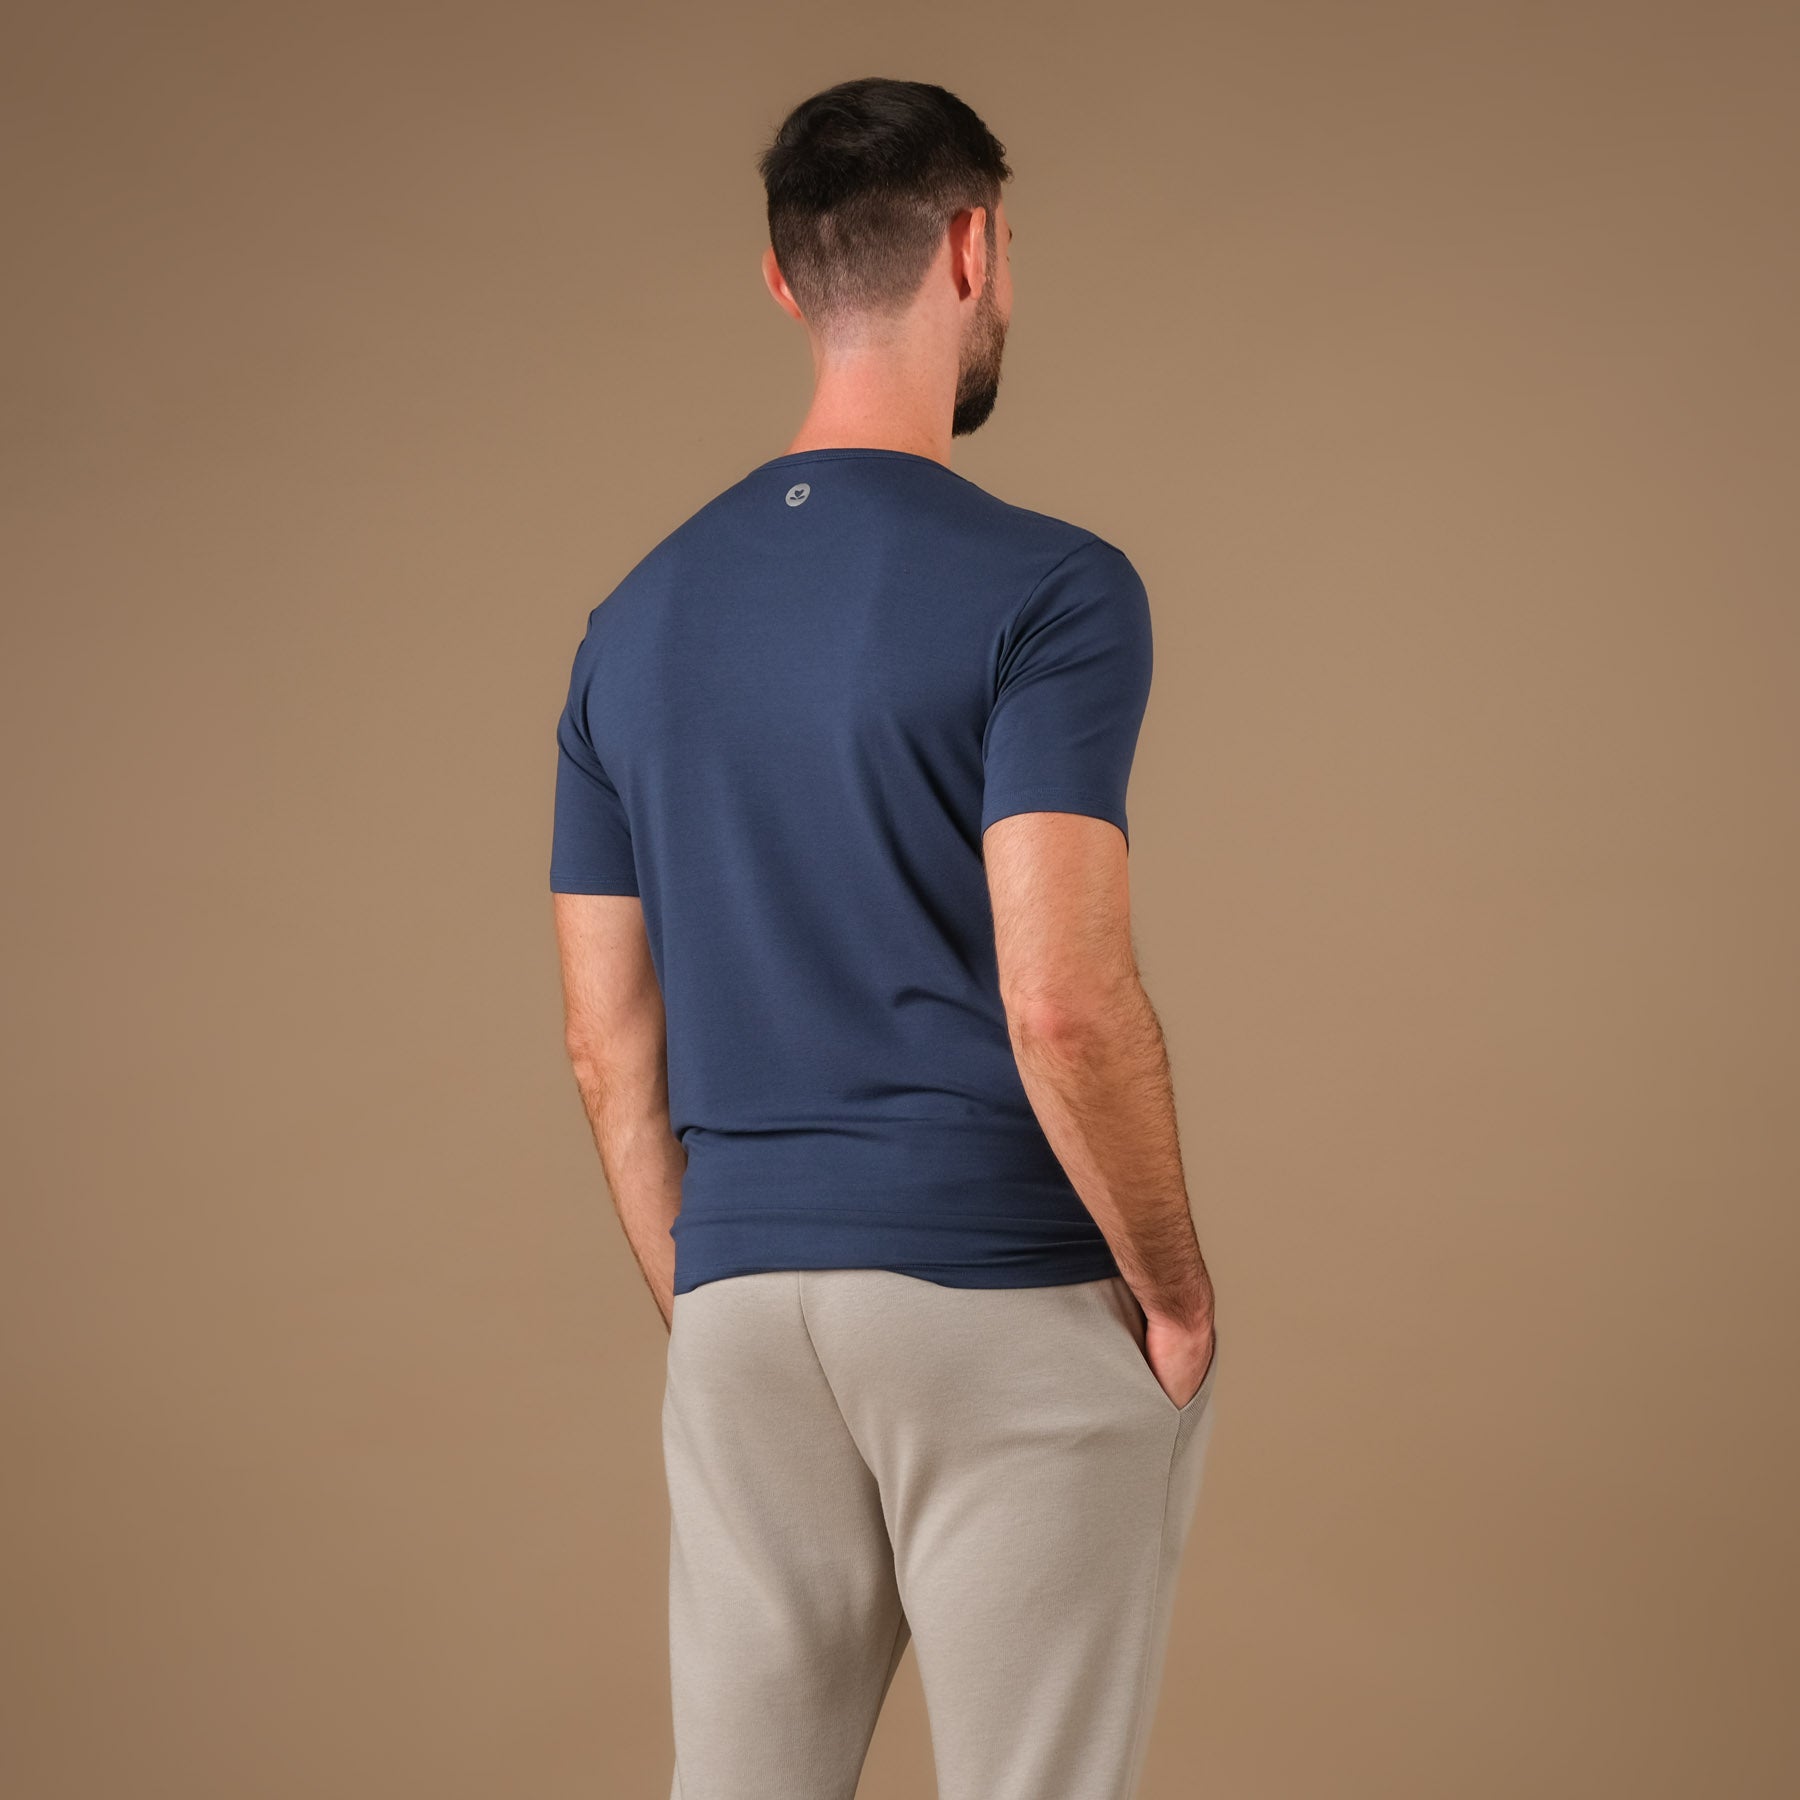 Shirt de yoga pour hommes Classy à manches courtes indigo